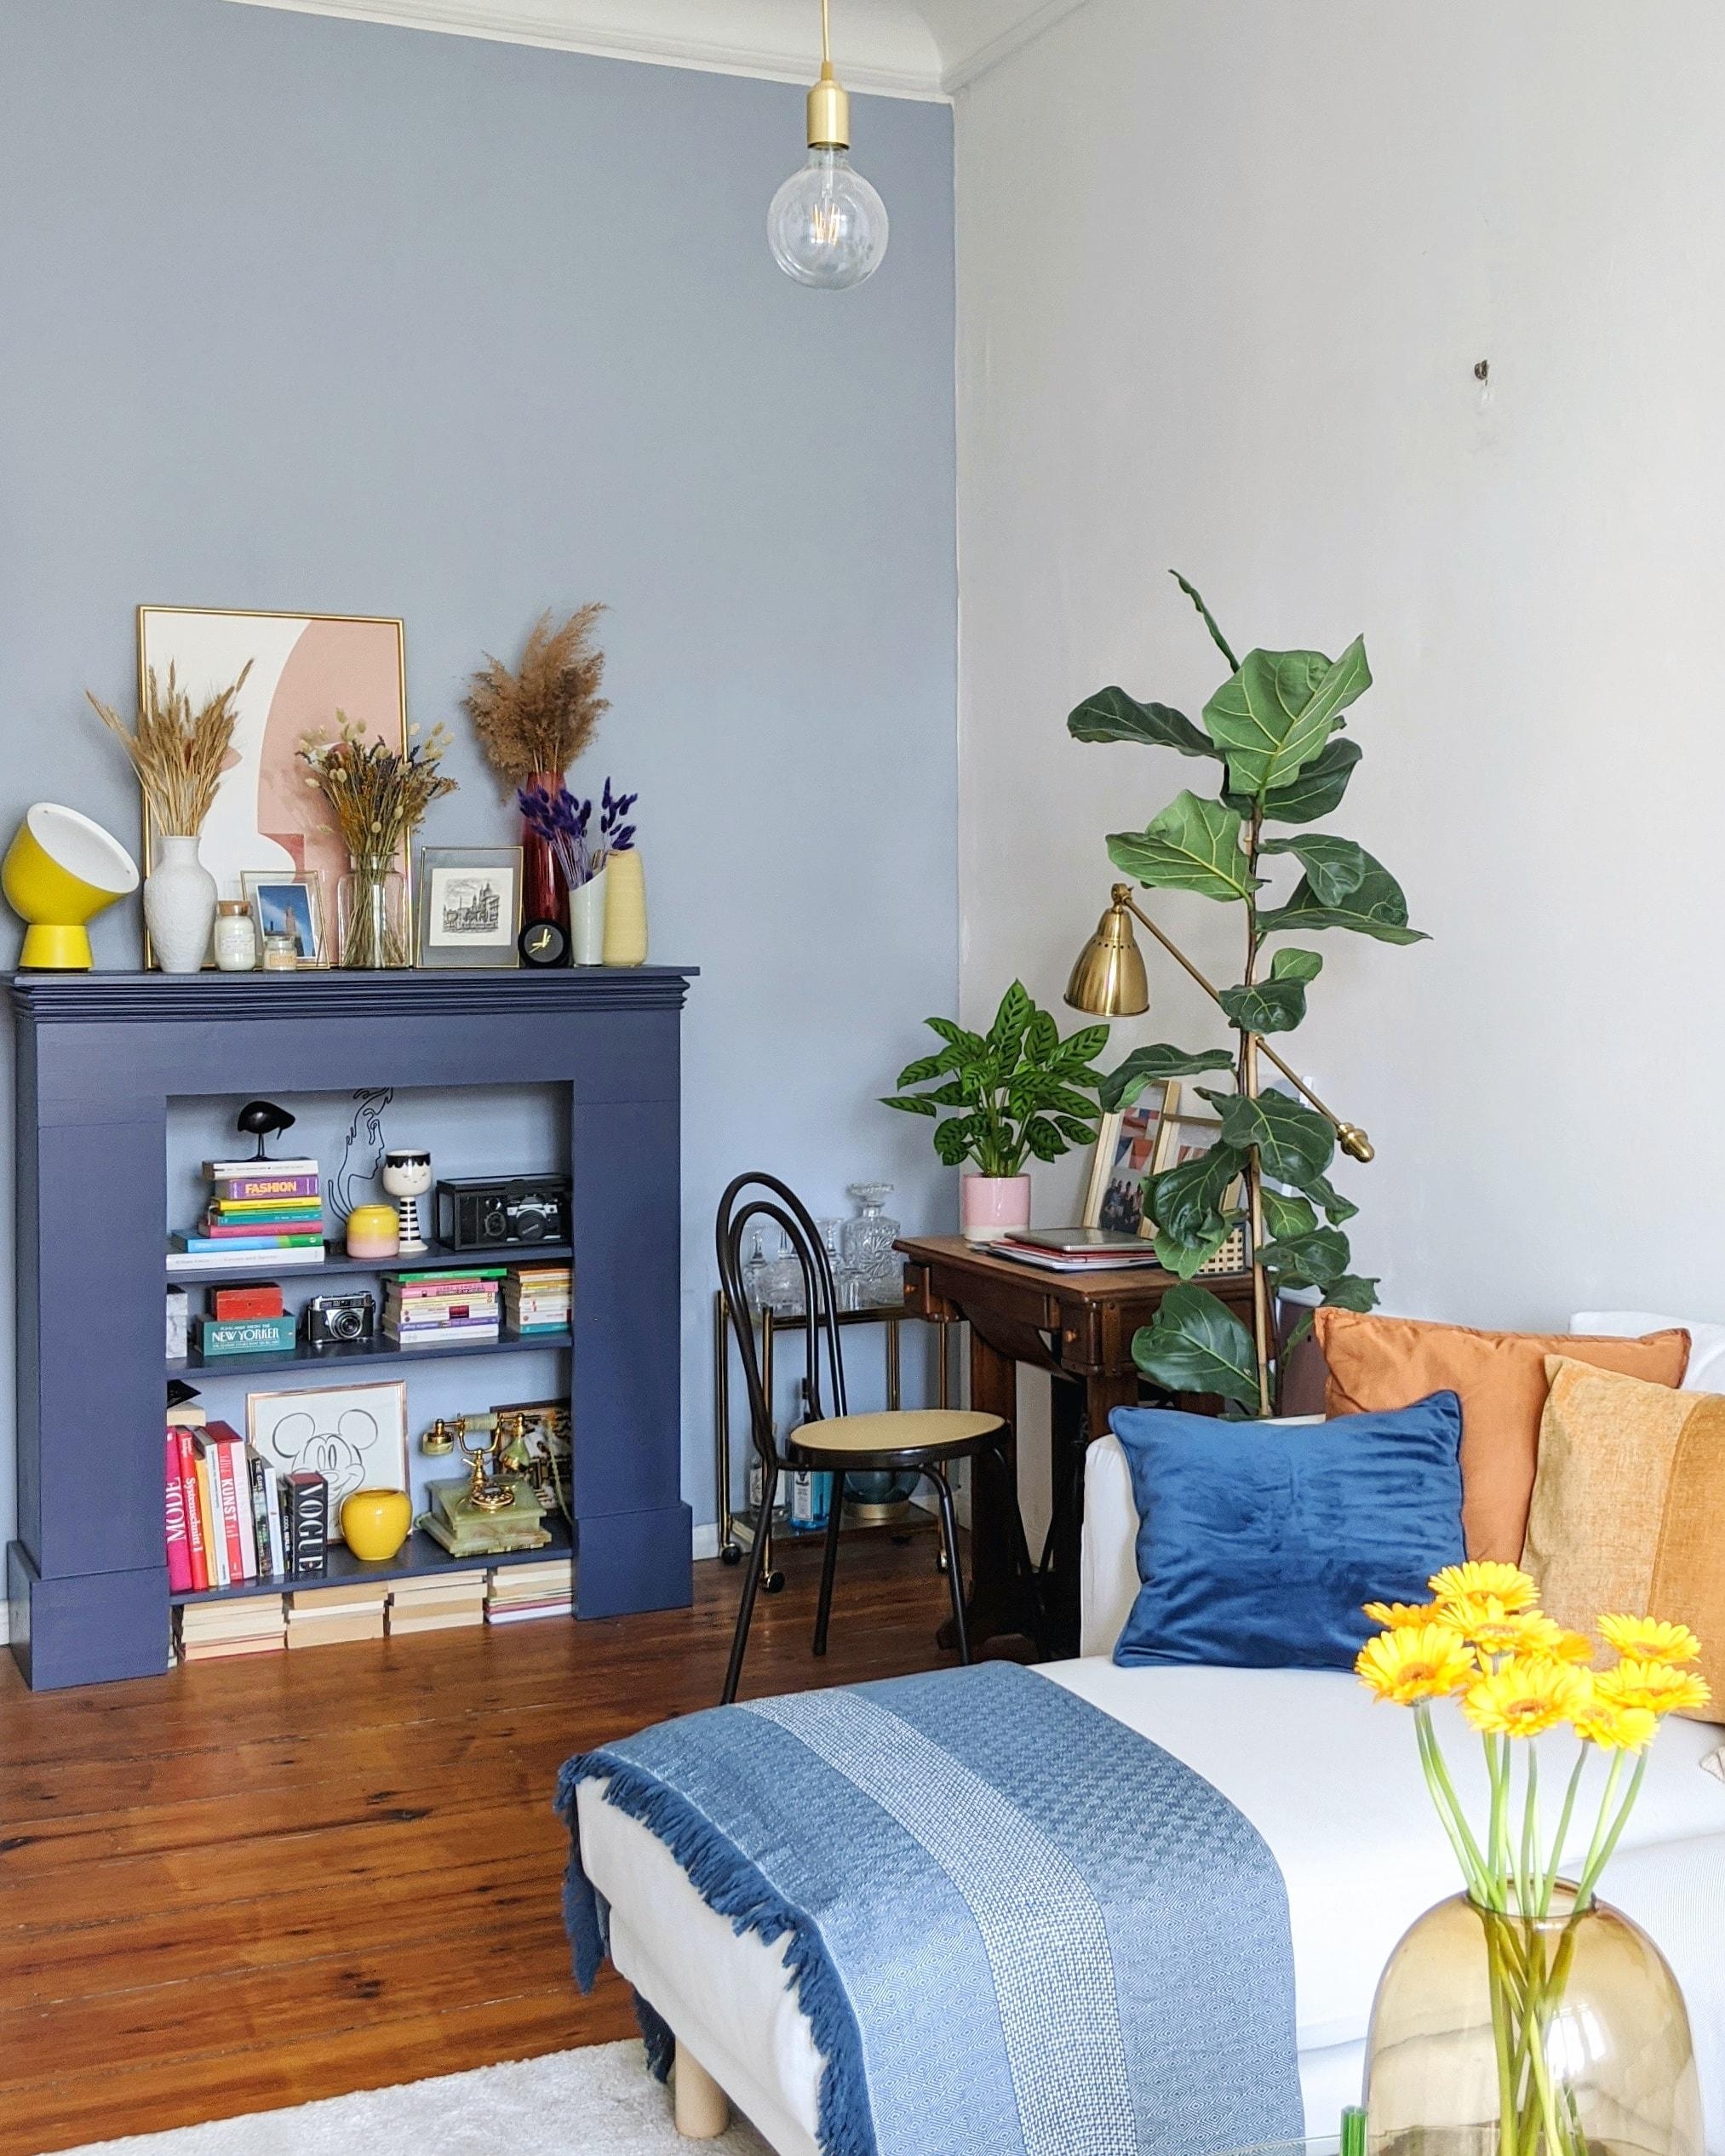 Endlich wieder blau machen! #couchliebt #couchstyle #zuhause #colours #livingroom